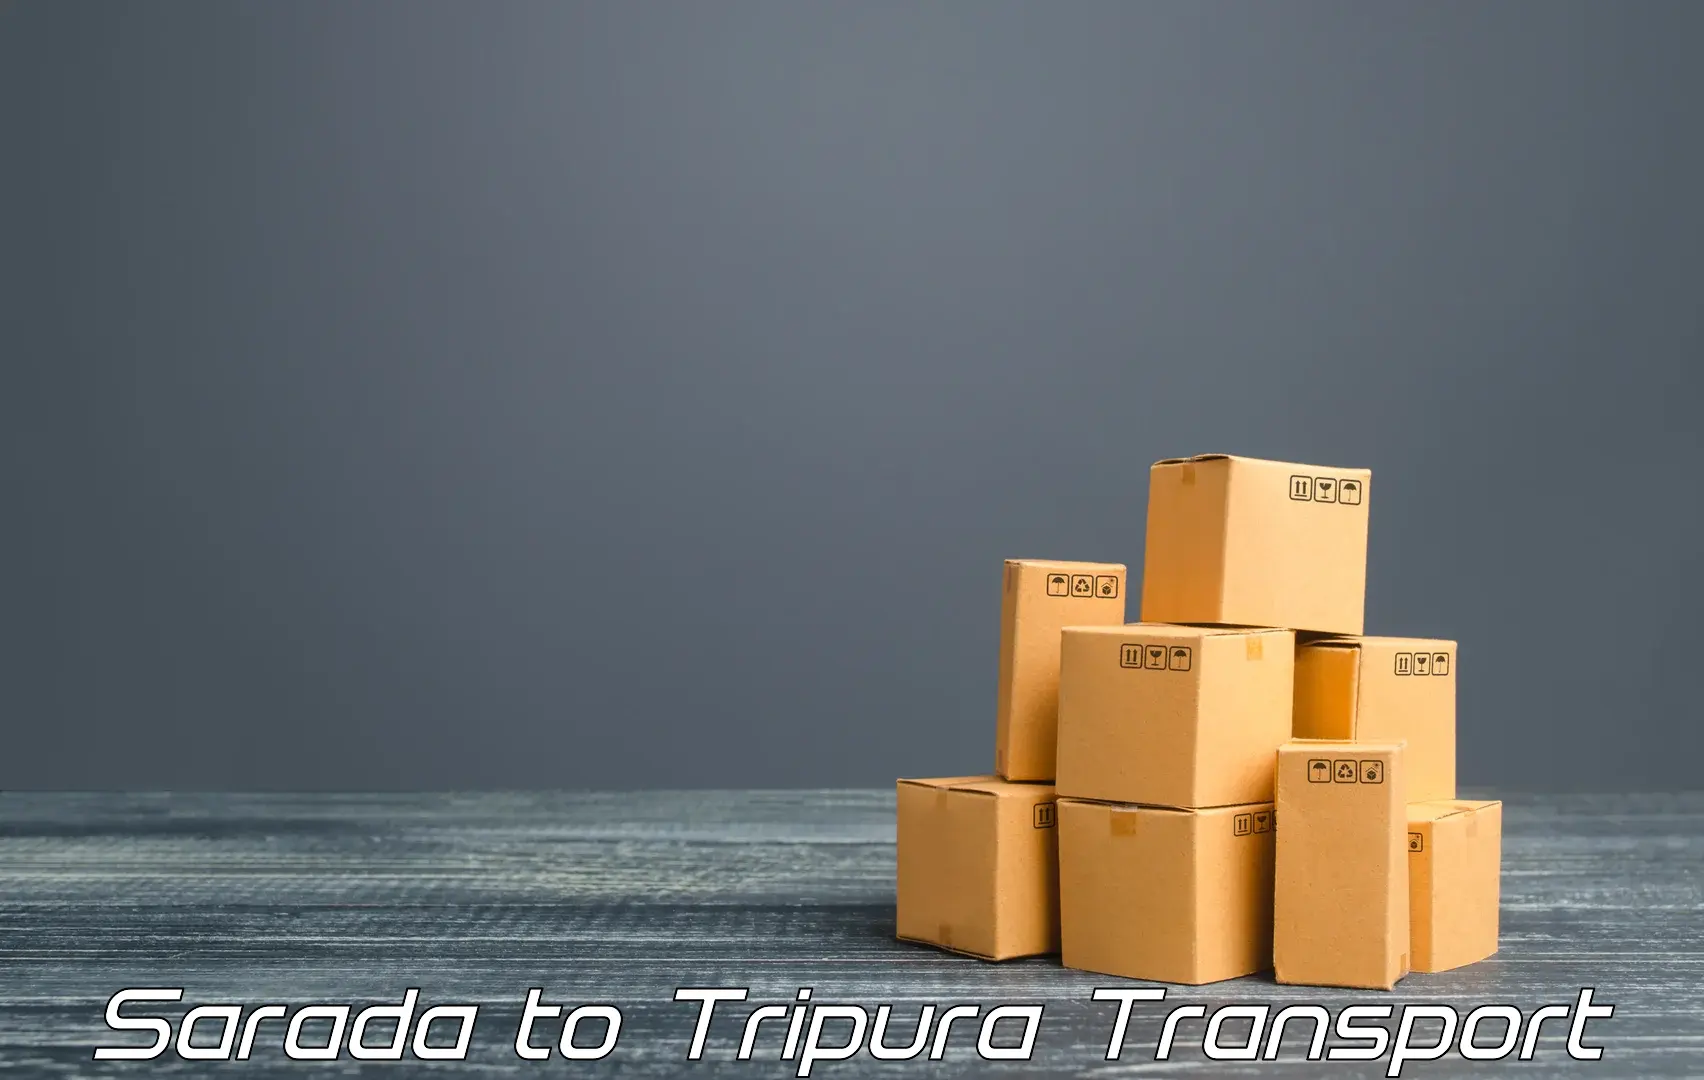 Cargo train transport services Sarada to South Tripura